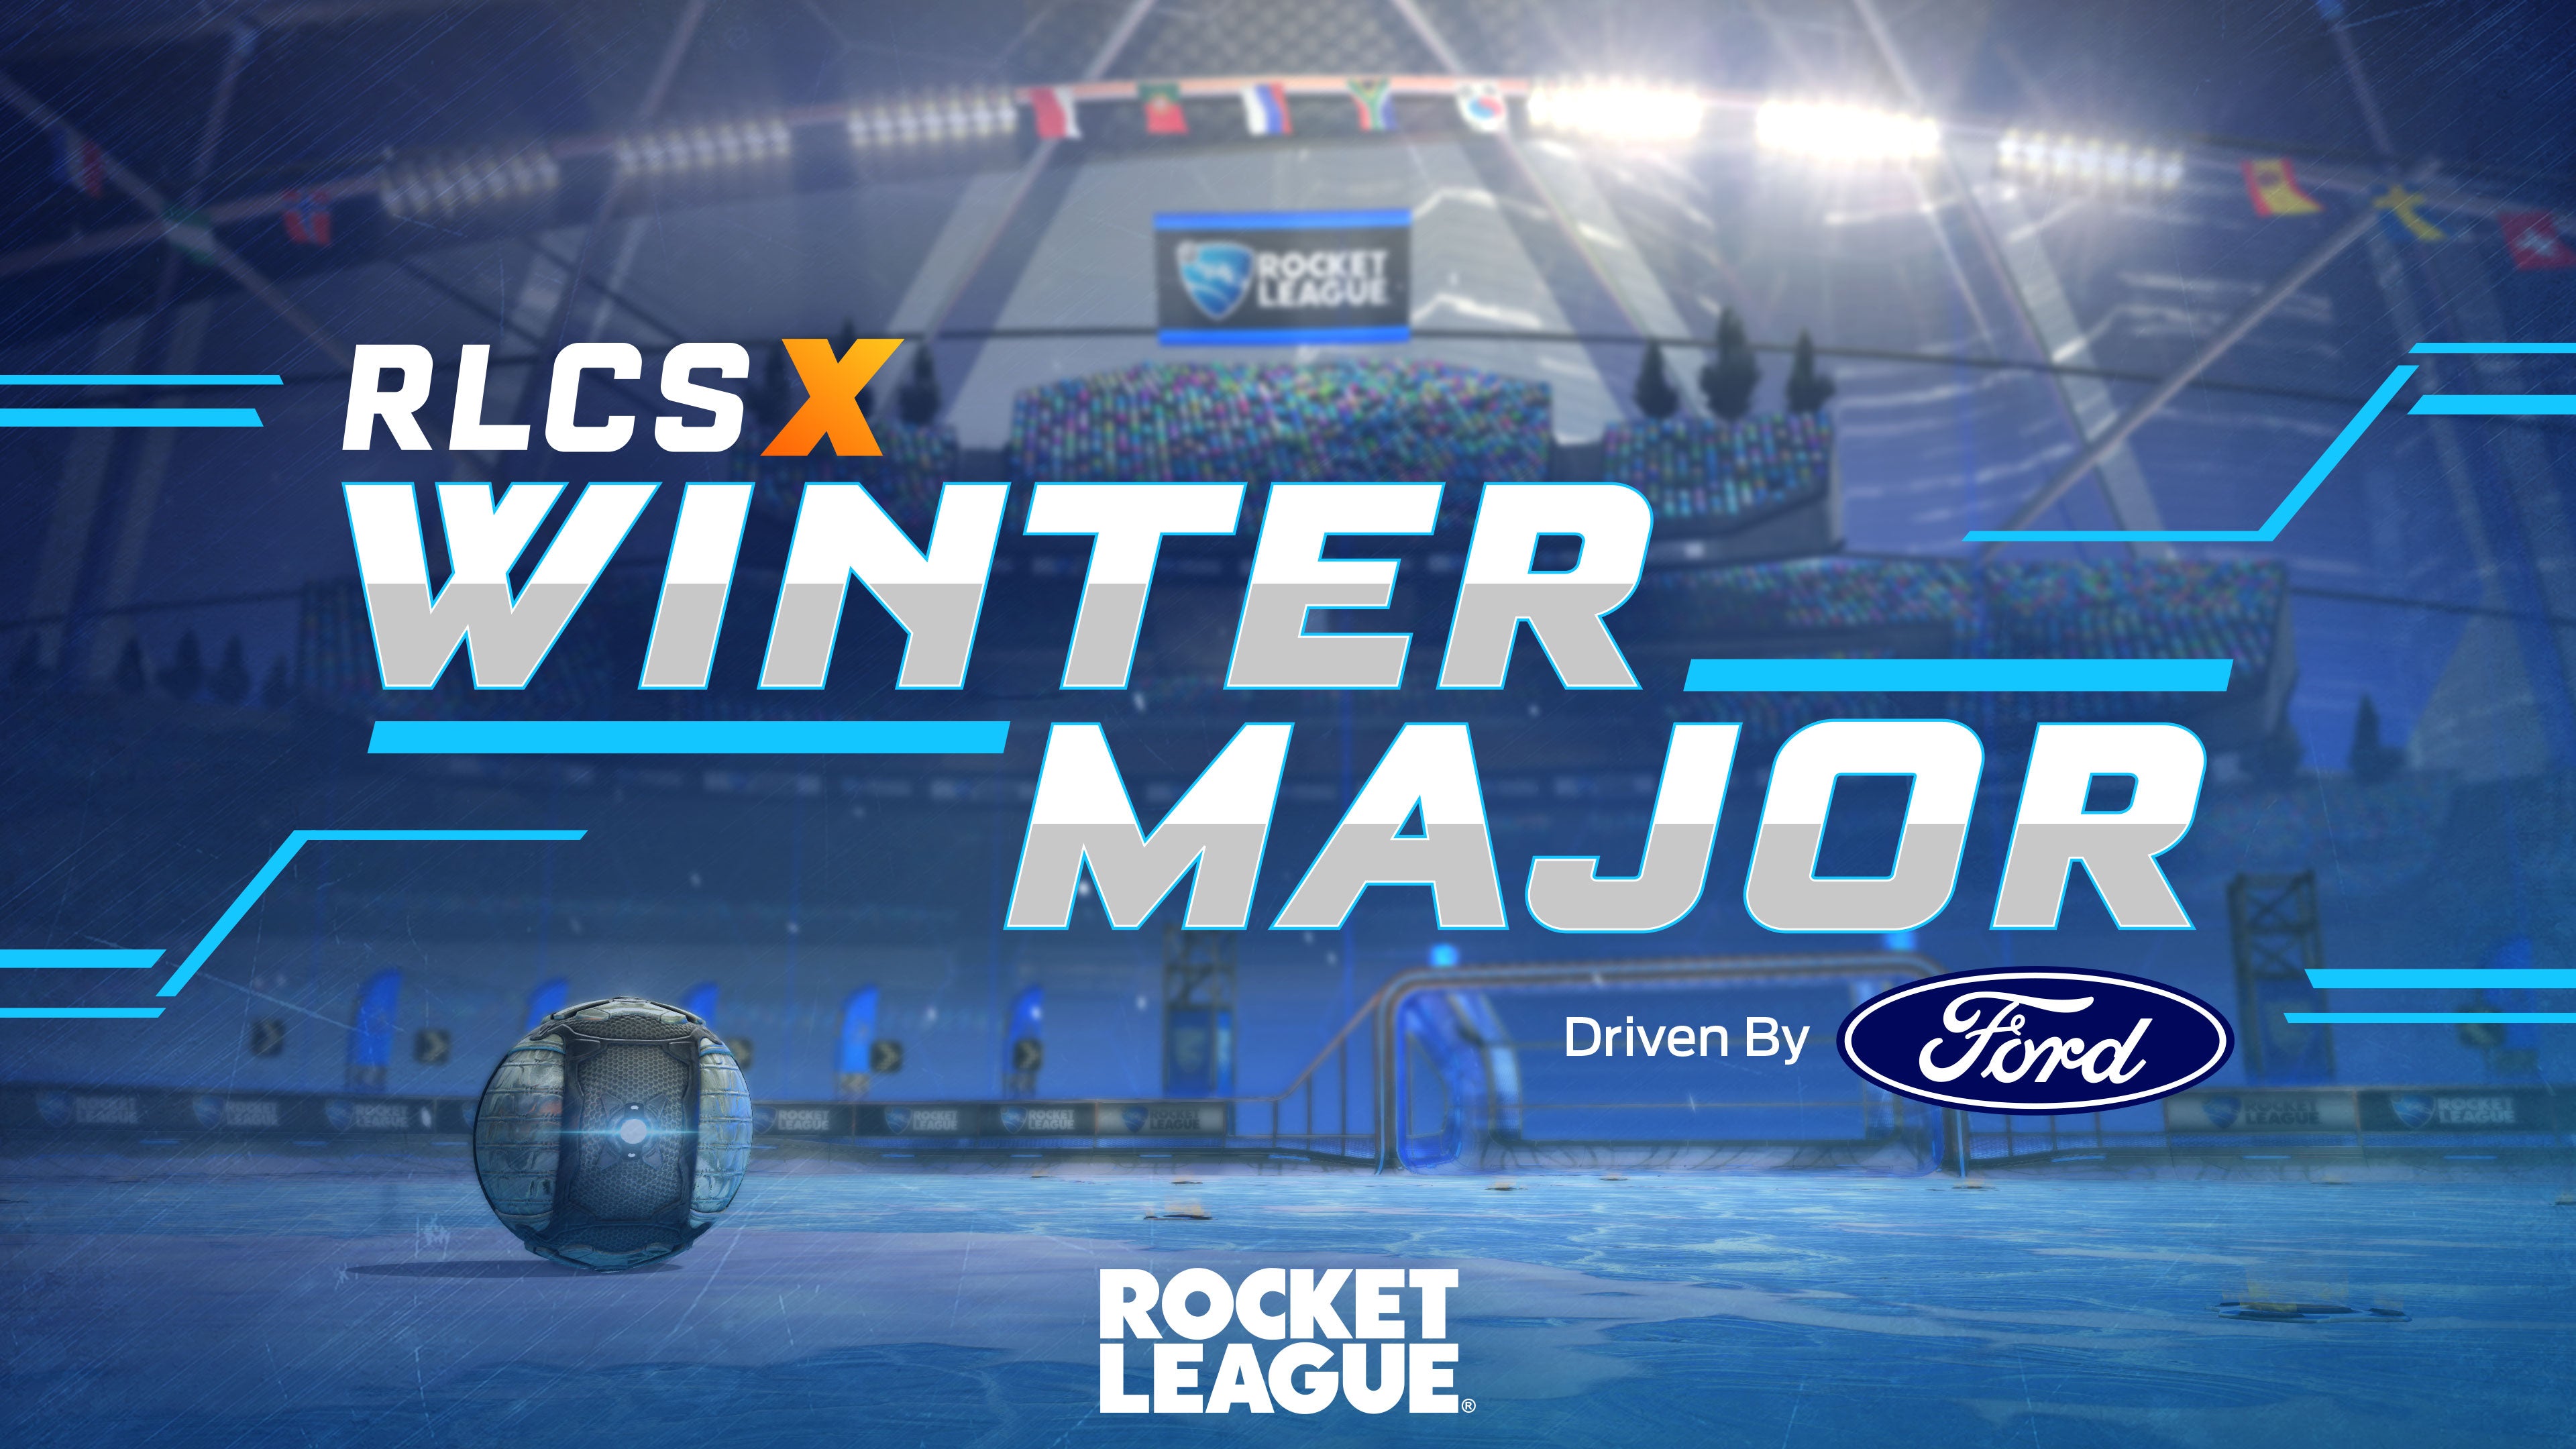 La RLCS X South American Winter Major ¡comienza mañana!